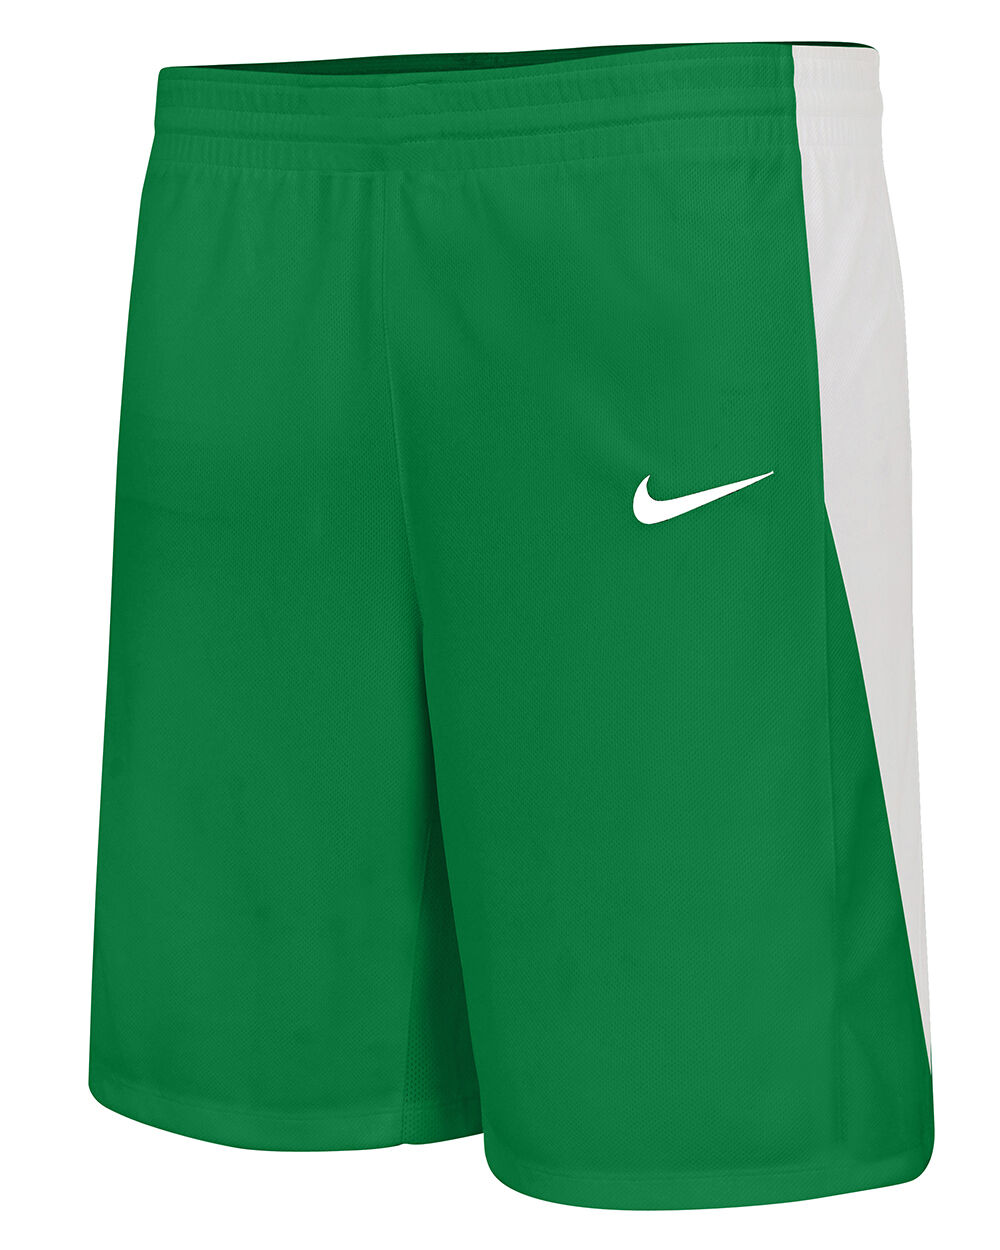 Pantalón corto de baloncesto Nike Team Verde Niño - NT0202-302